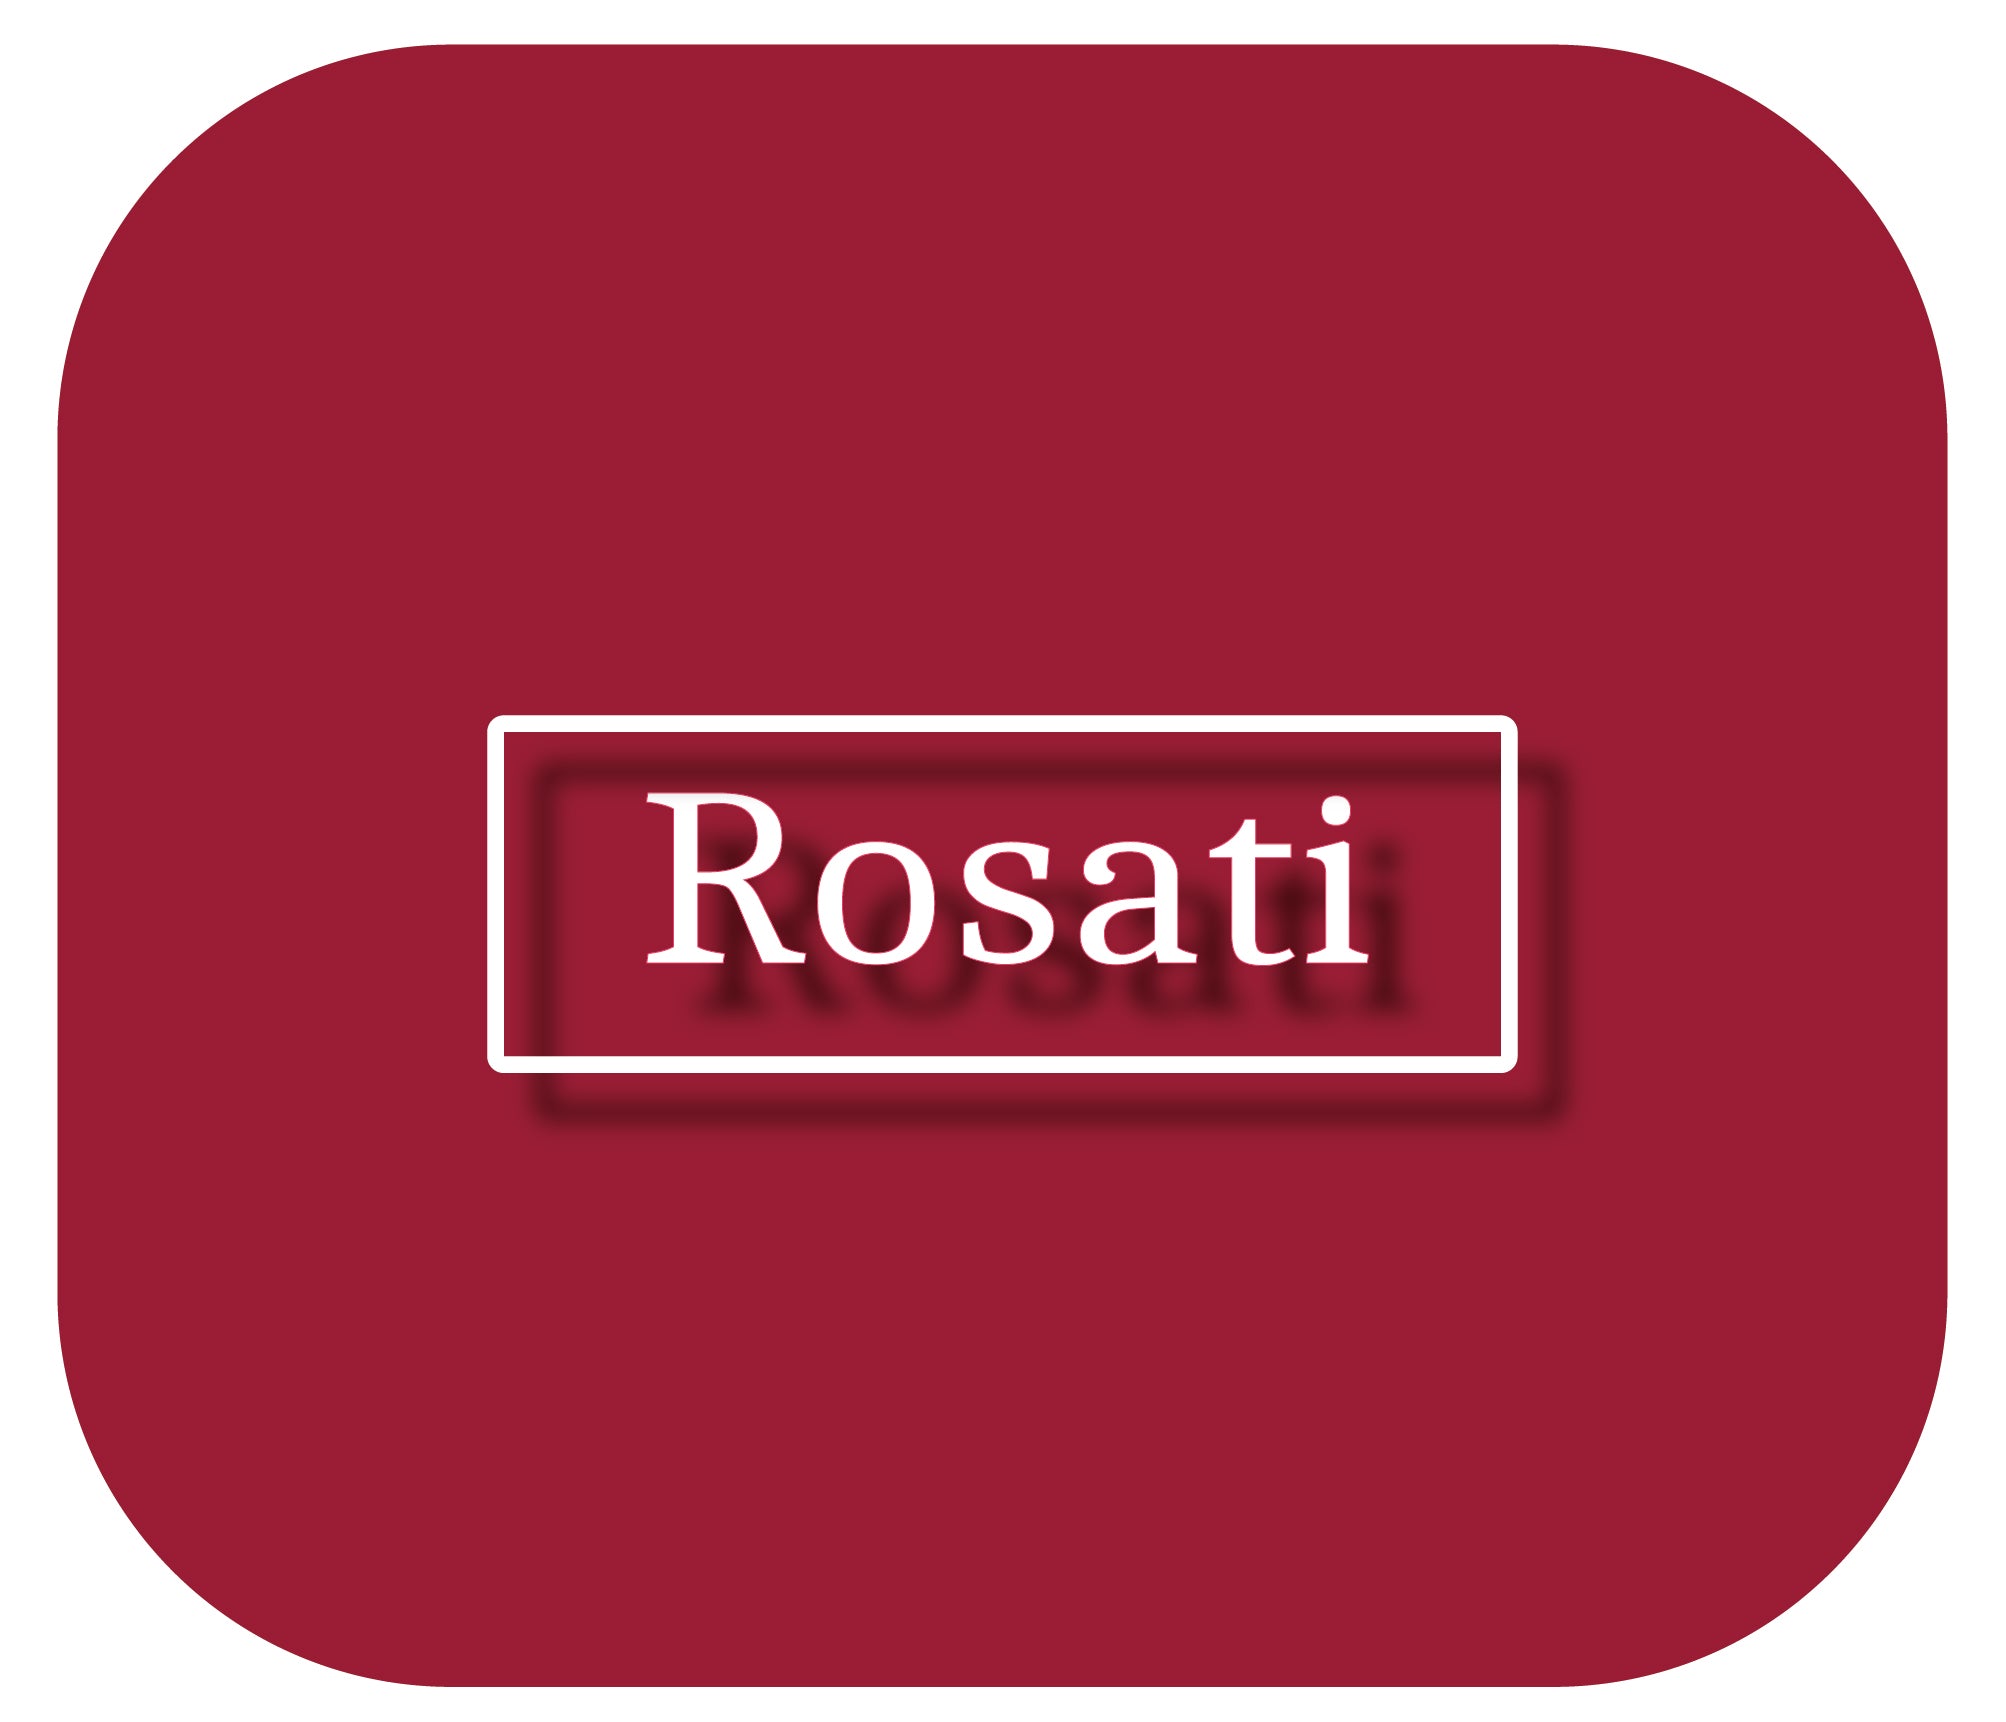 Vini Rosati